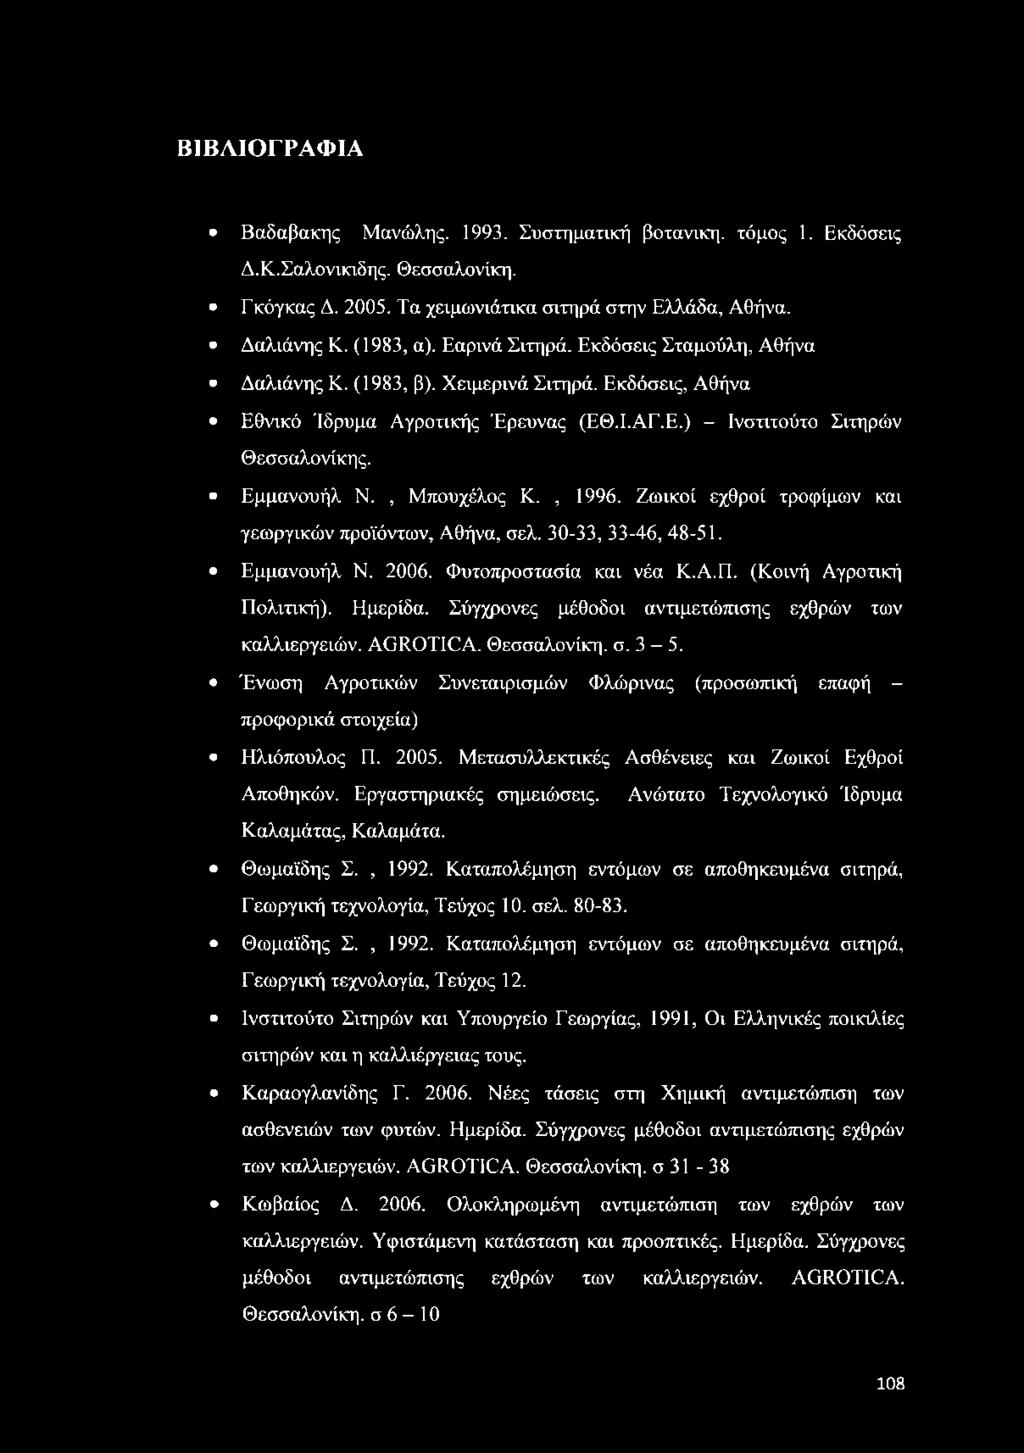 , Μπουχέλος Κ., 1996. Ζωικοί εχθροί τροφίμων και γεωργικών προϊόντων, Αθήνα, σελ. 30-33, 33-46, 48-51. Εμμανουήλ Ν. 2006. Φυτοπροστασία και νέα Κ.Α.Π. (Κοινή Αγροτική Πολιτική). Ημερίδα.